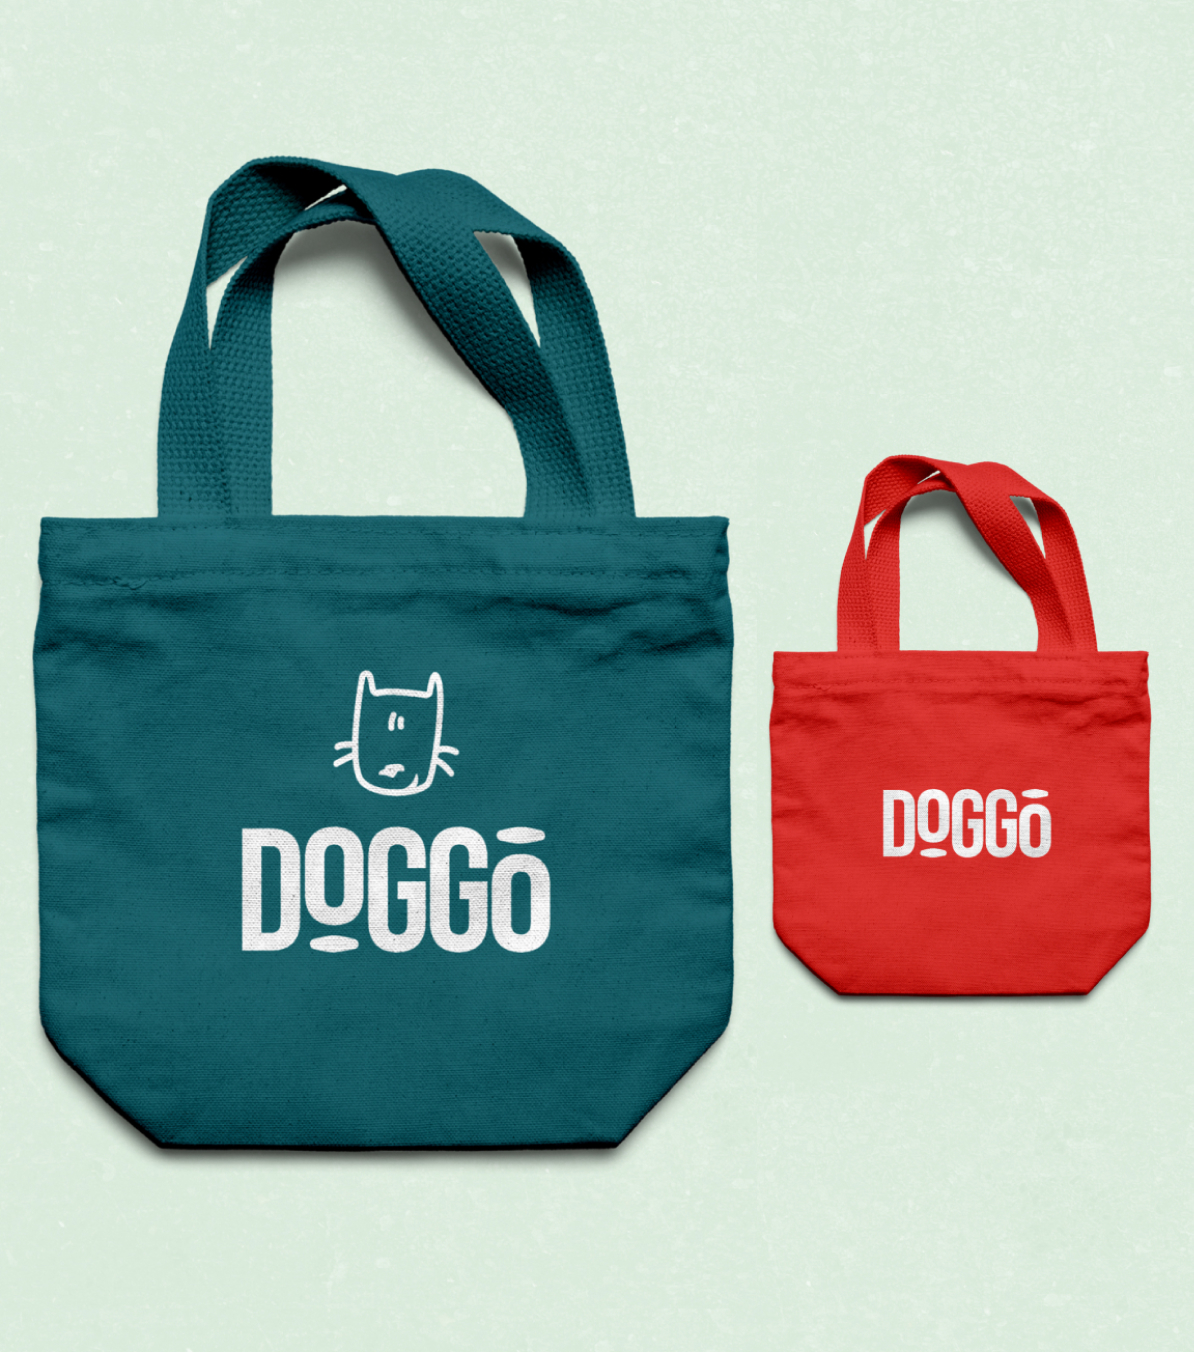 Doggo brand preview